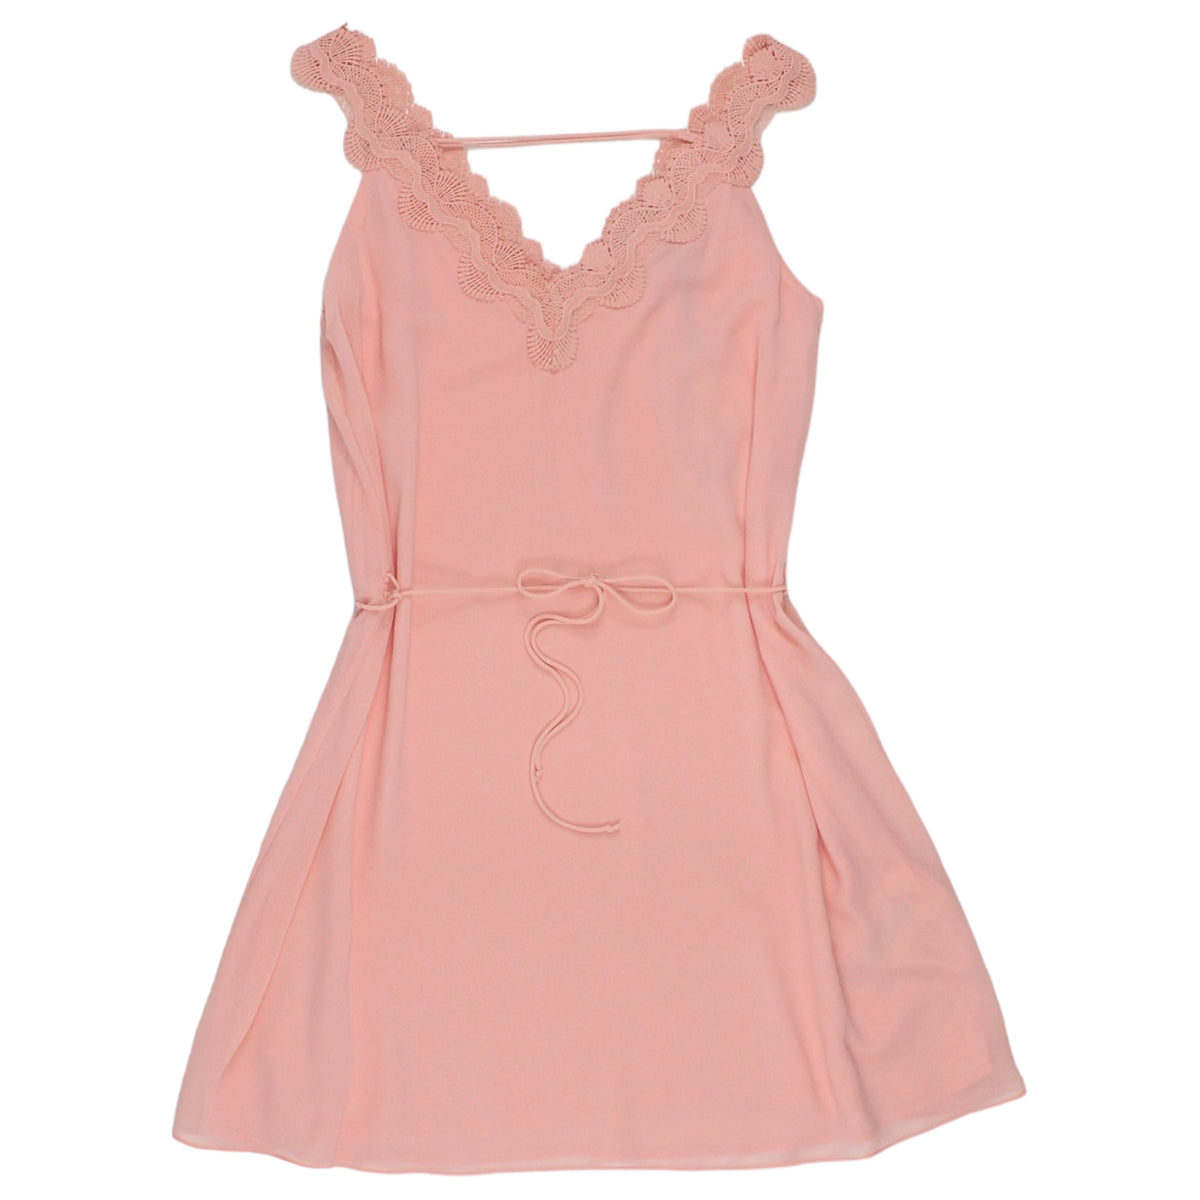 Naf Naf Pink Baby Doll Style Dress